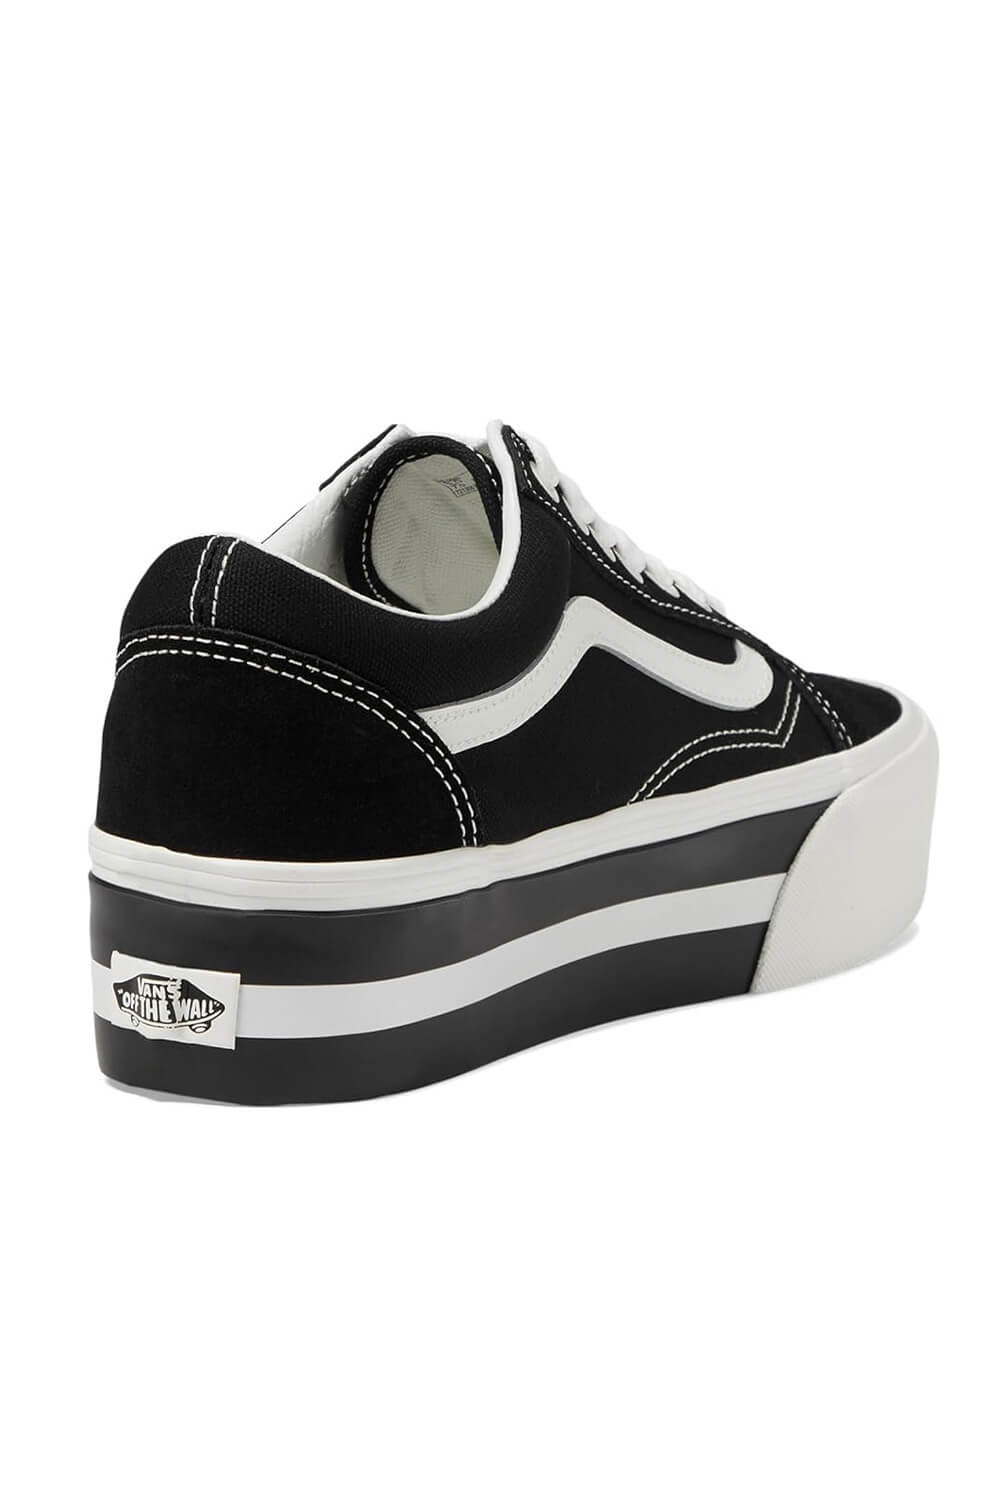 Vans Old Skool Stackform Sneakers for Women in Black/White